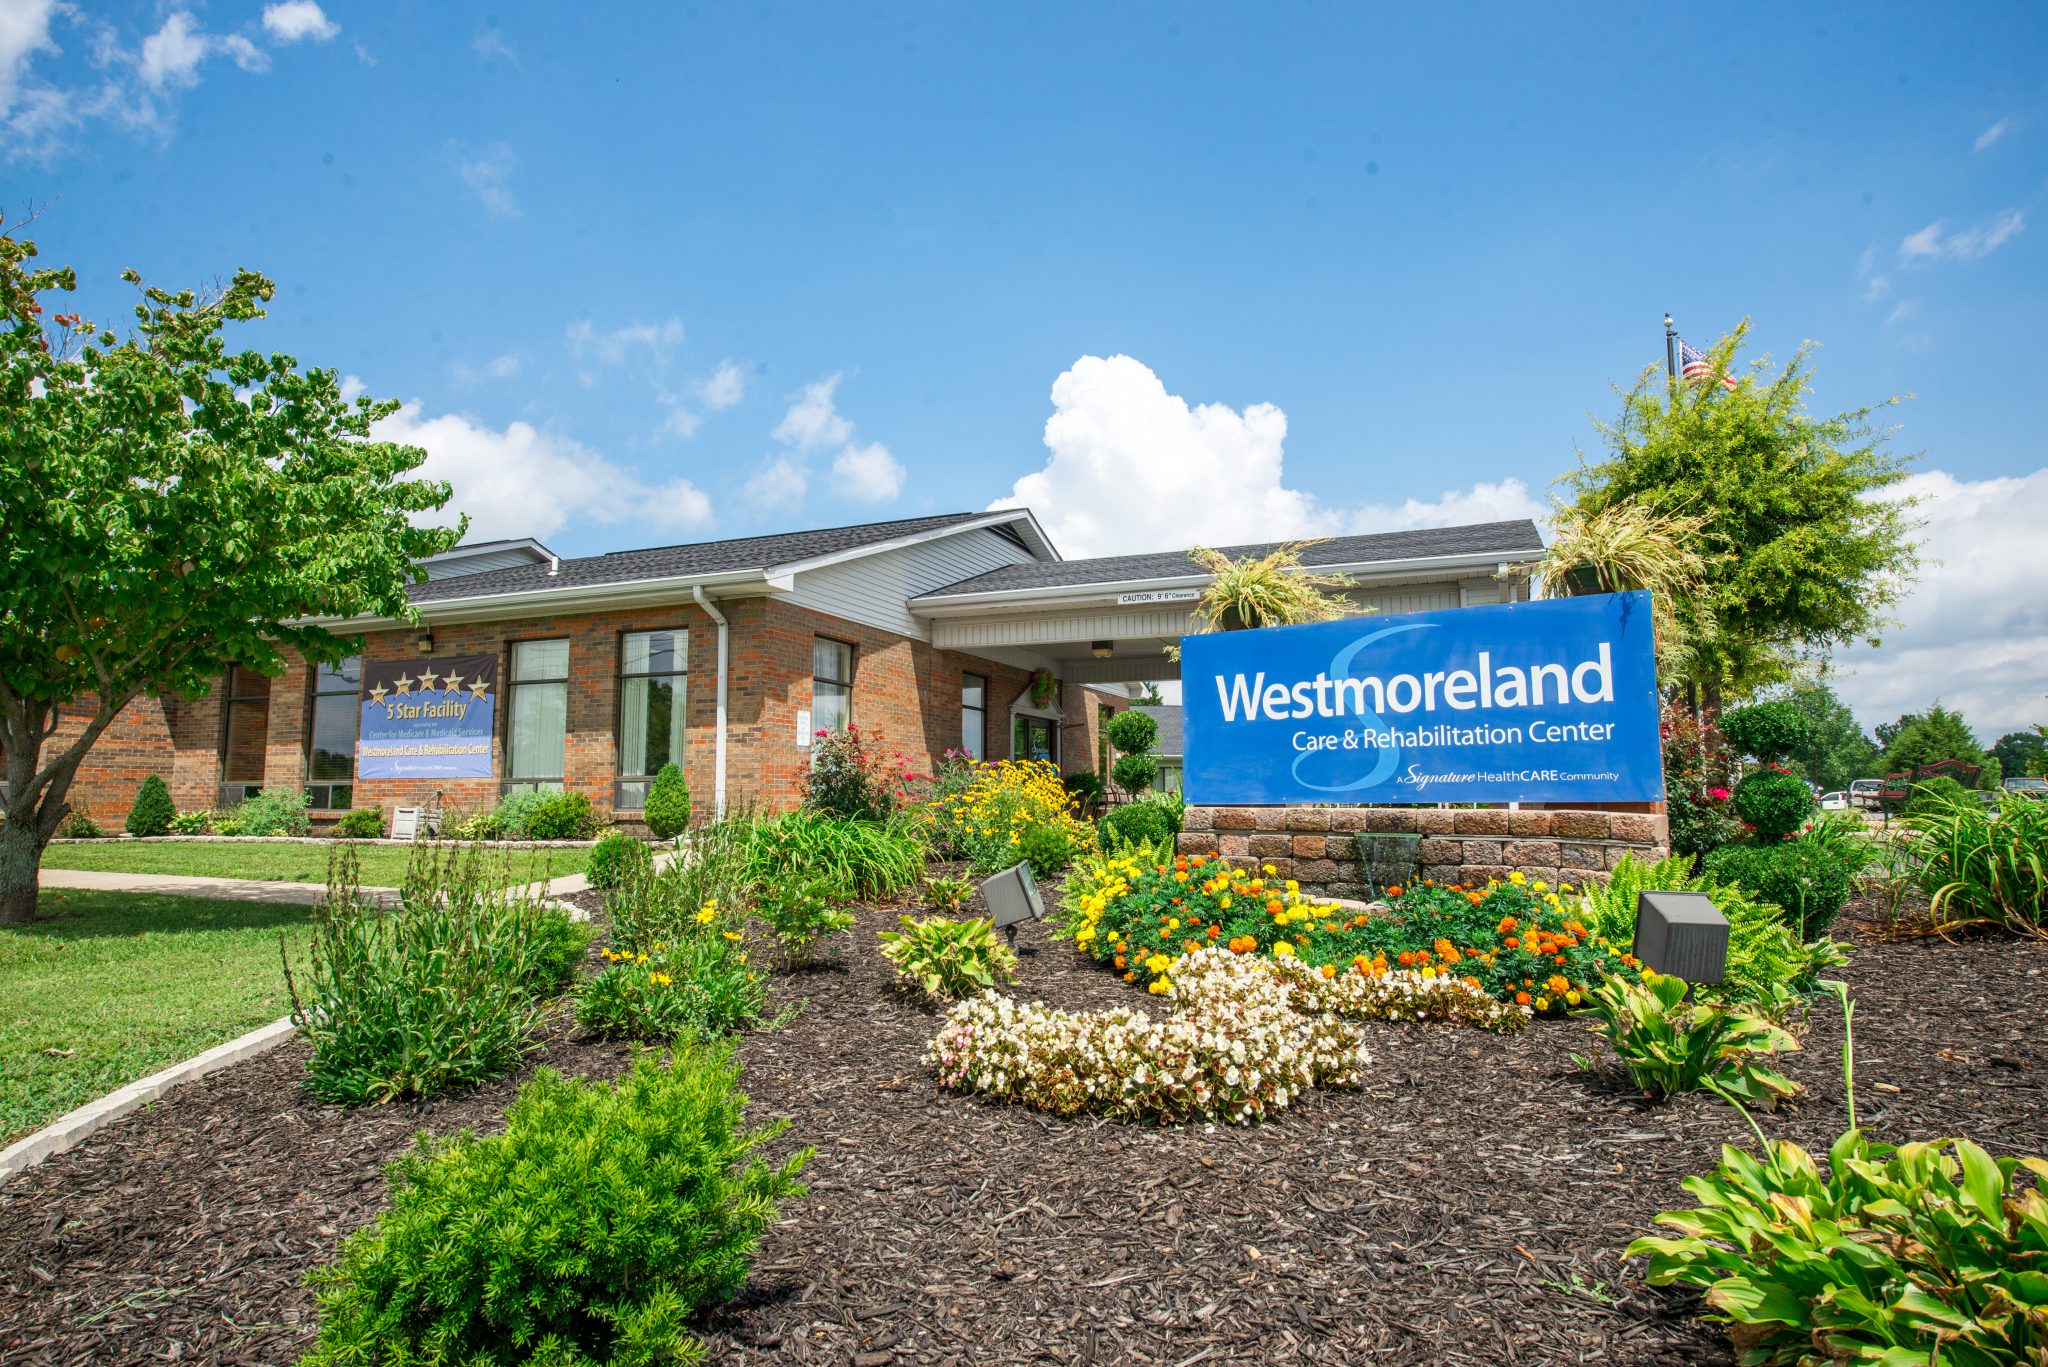 Westmoreland Care and Rehabilitation Center